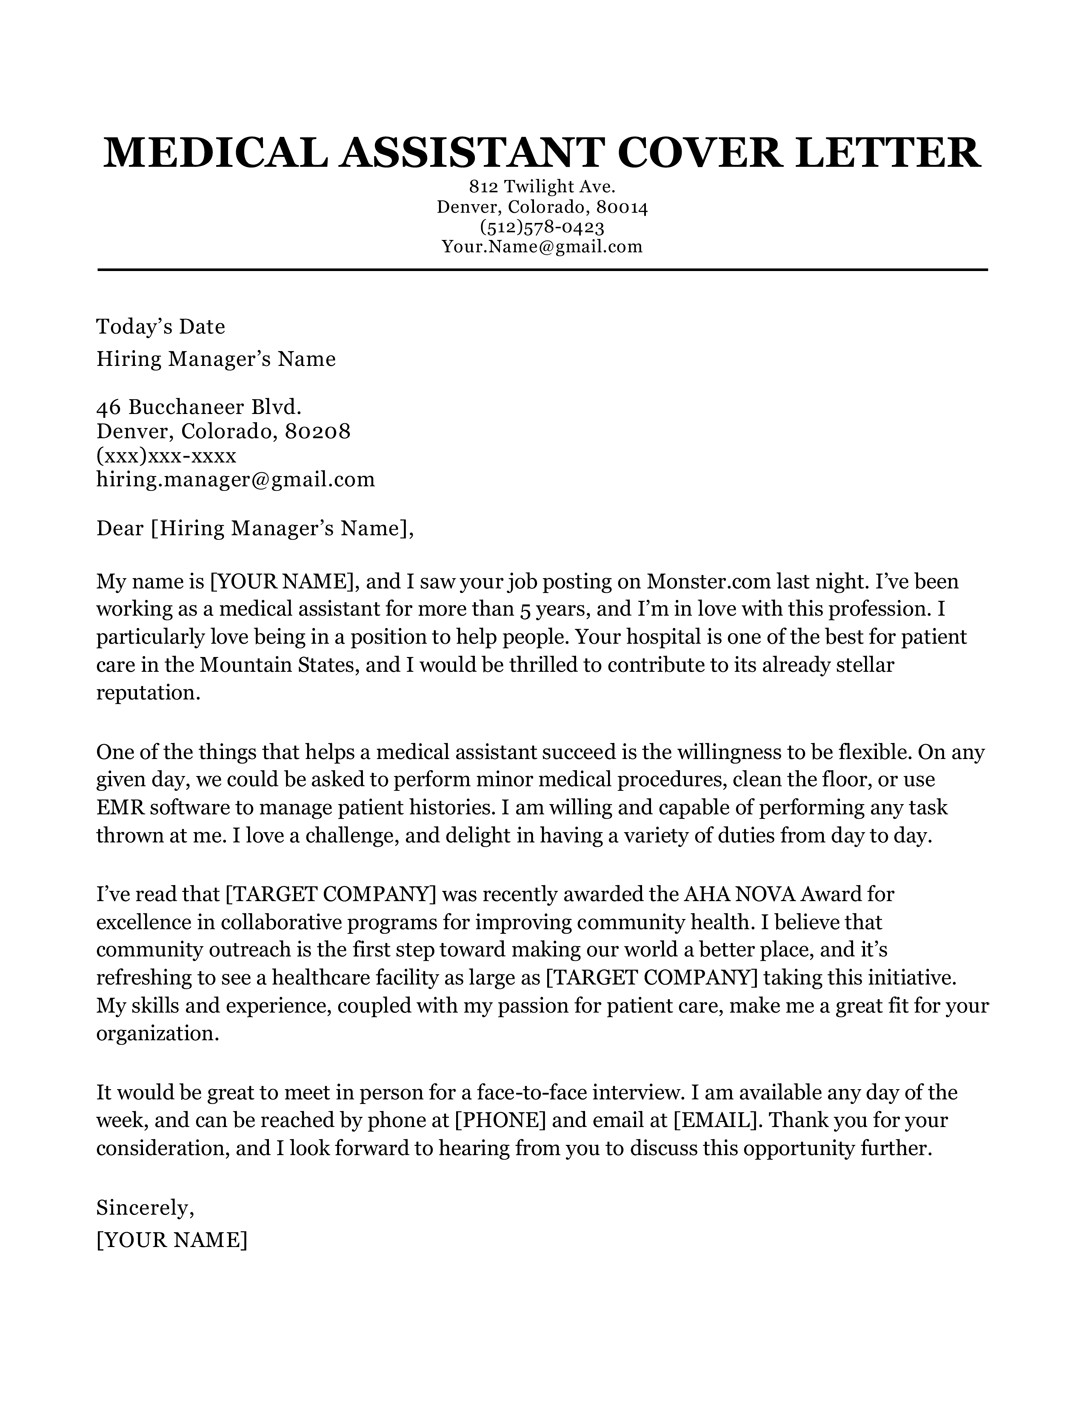 Sample Cover Letter for Resume for Medical assistant Medical assistant Cover Letter Sample